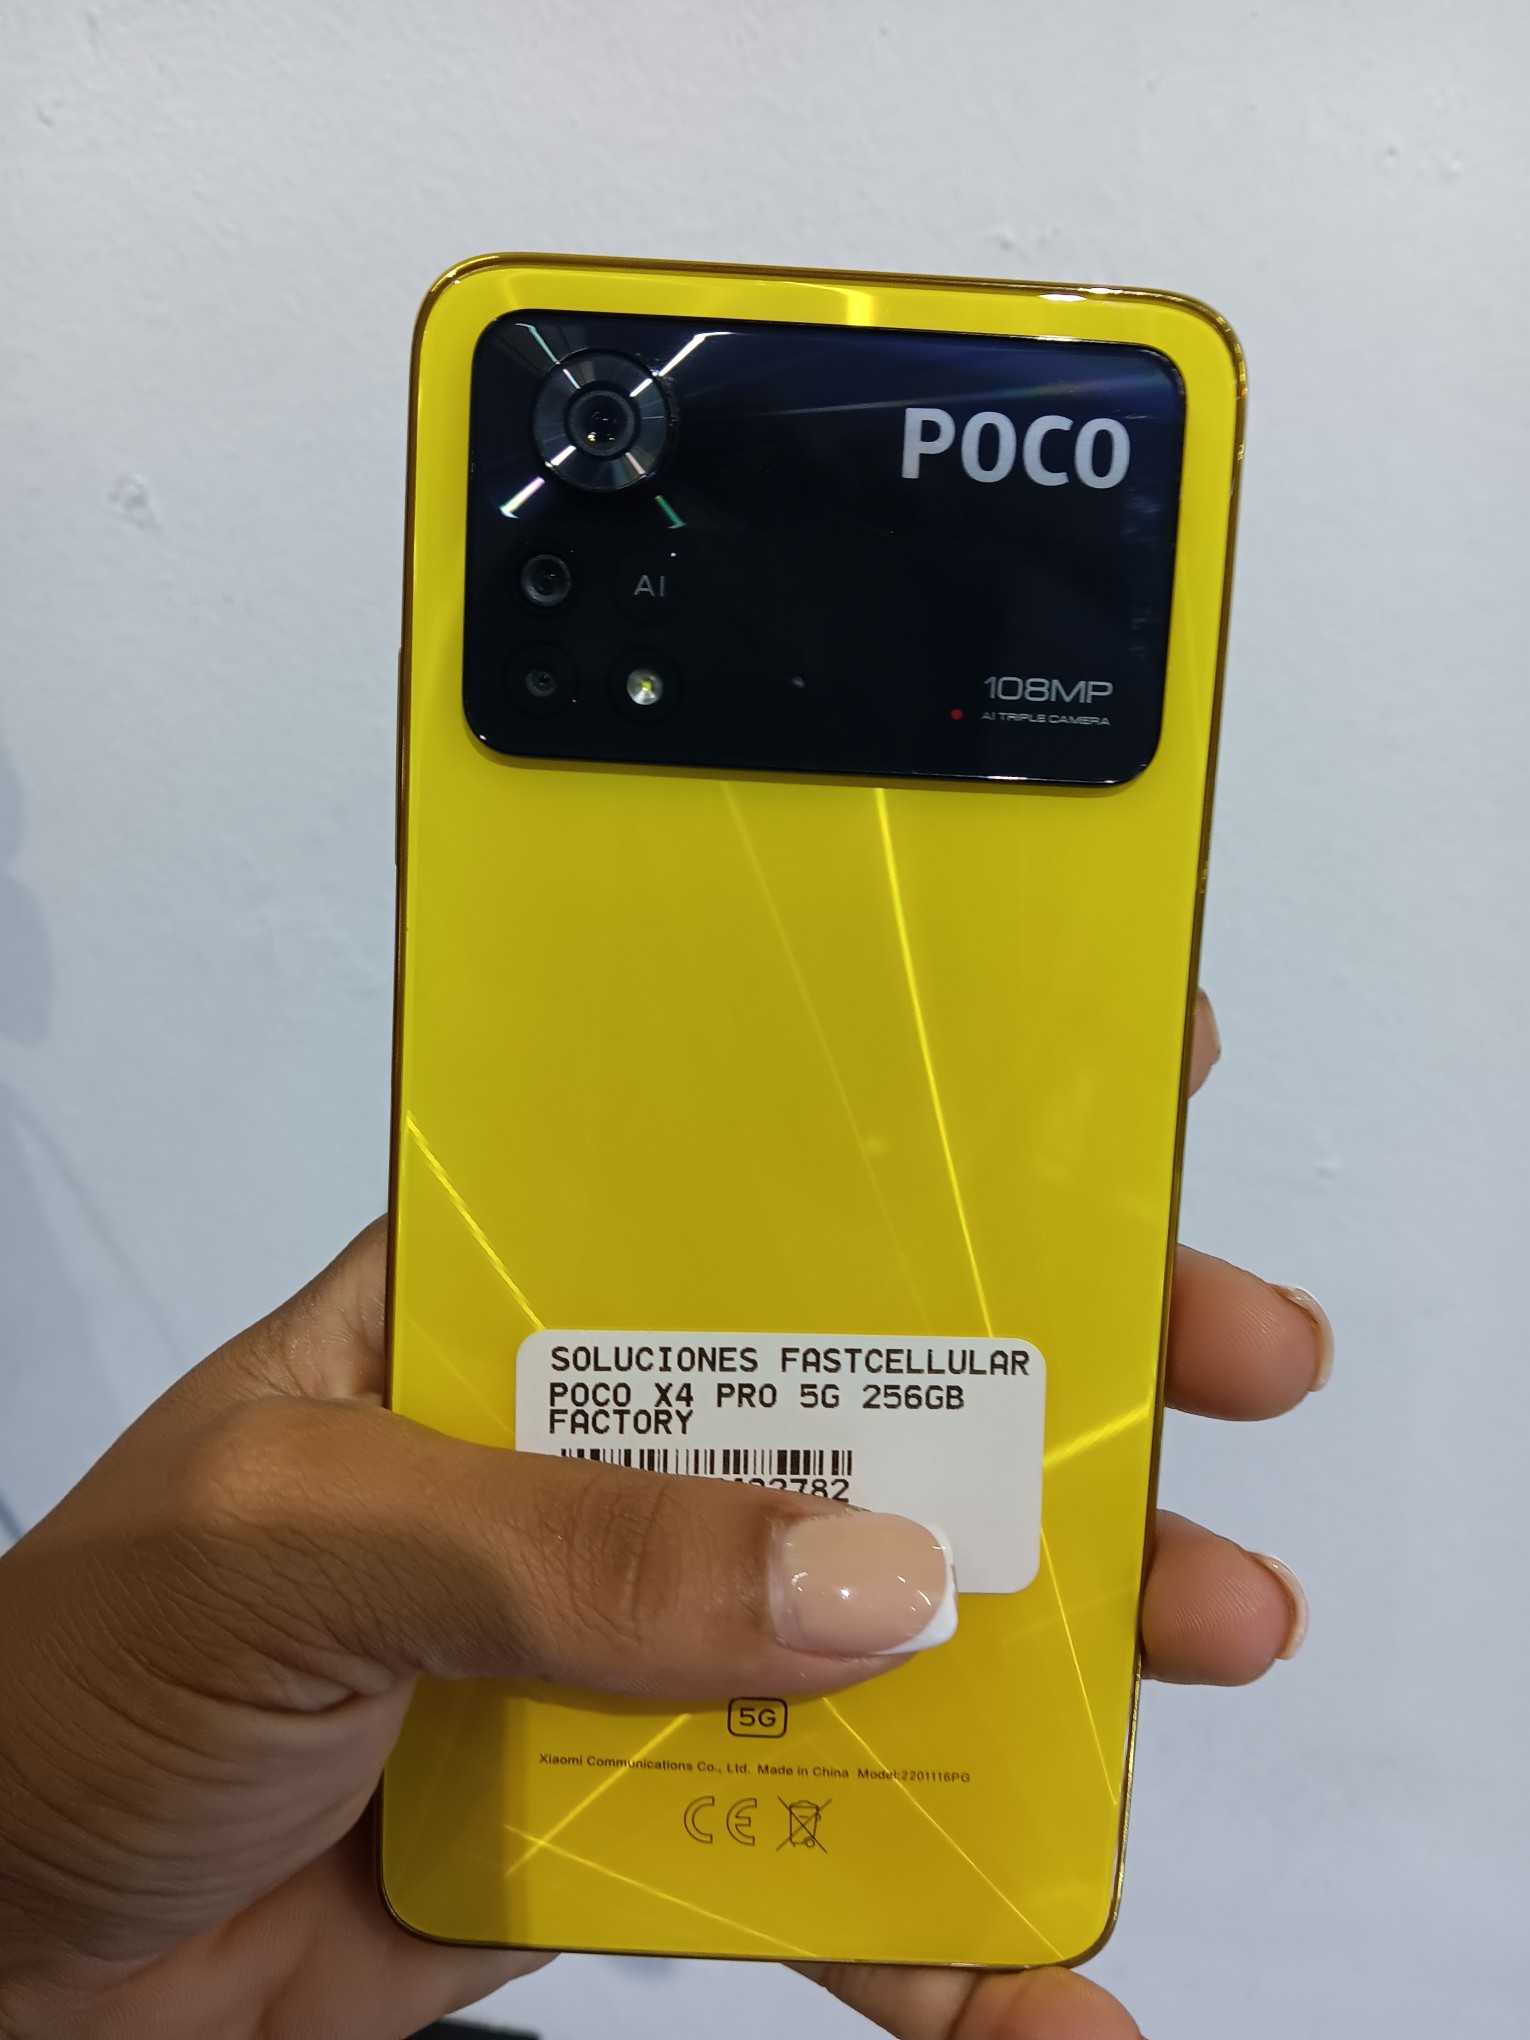 celulares y tabletas - Poco x4 pro 5G 256GB factory  1